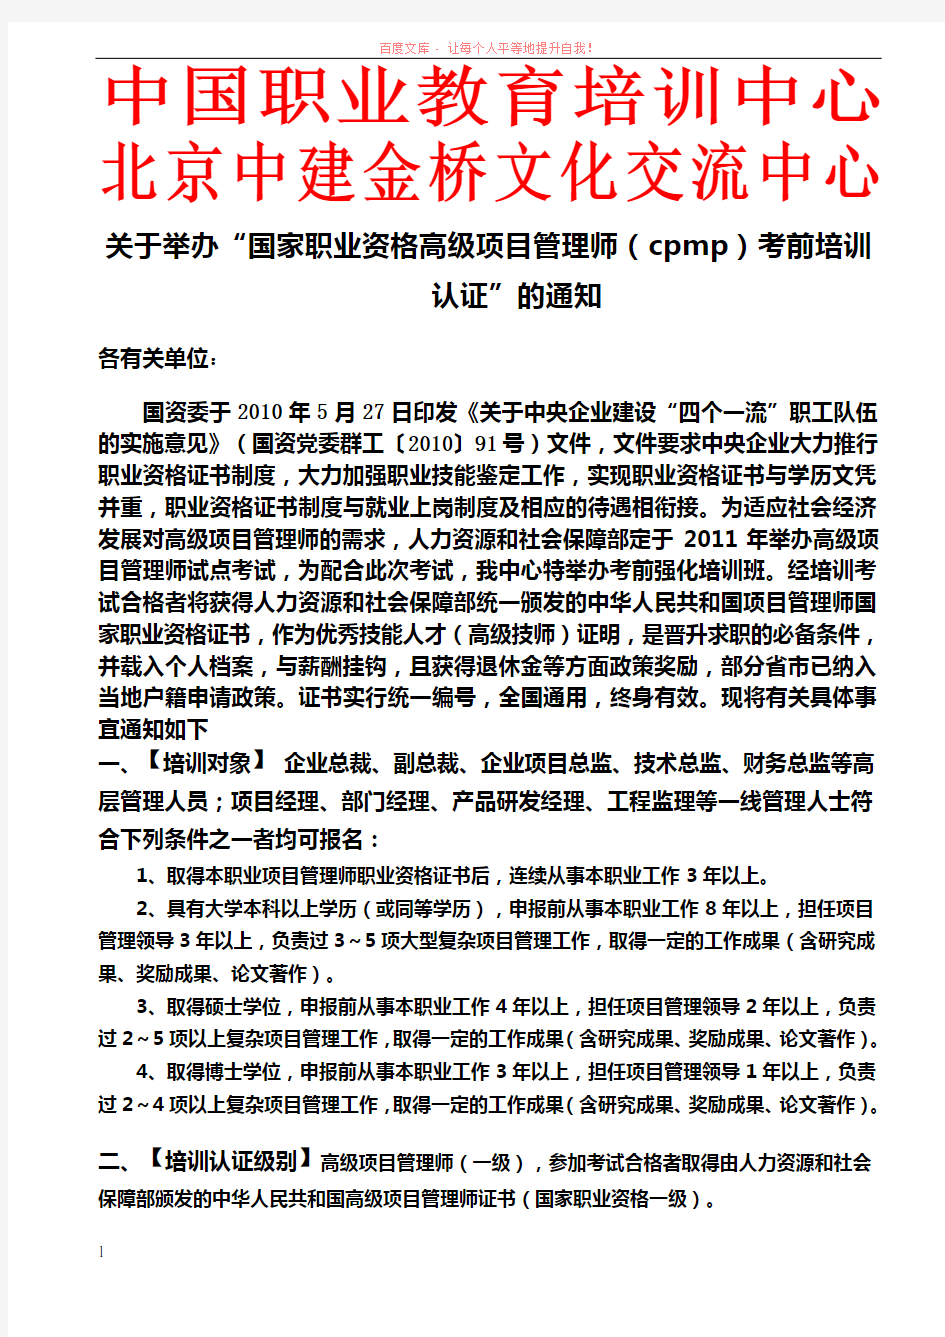 王佳高级项目管理师文件 (1)